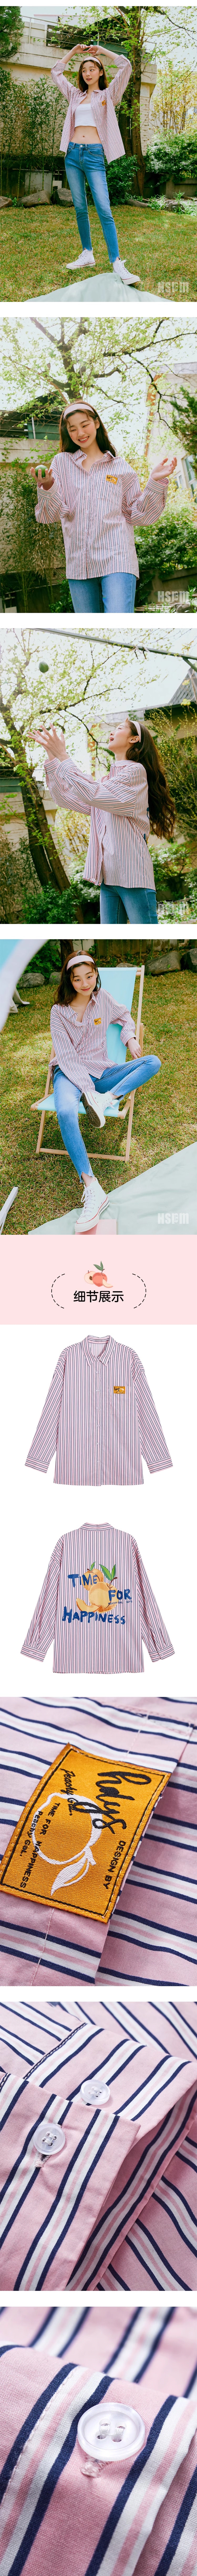 【中国直邮】HSPM新款宽松条纹长袖衬衫 粉色(彩条) L